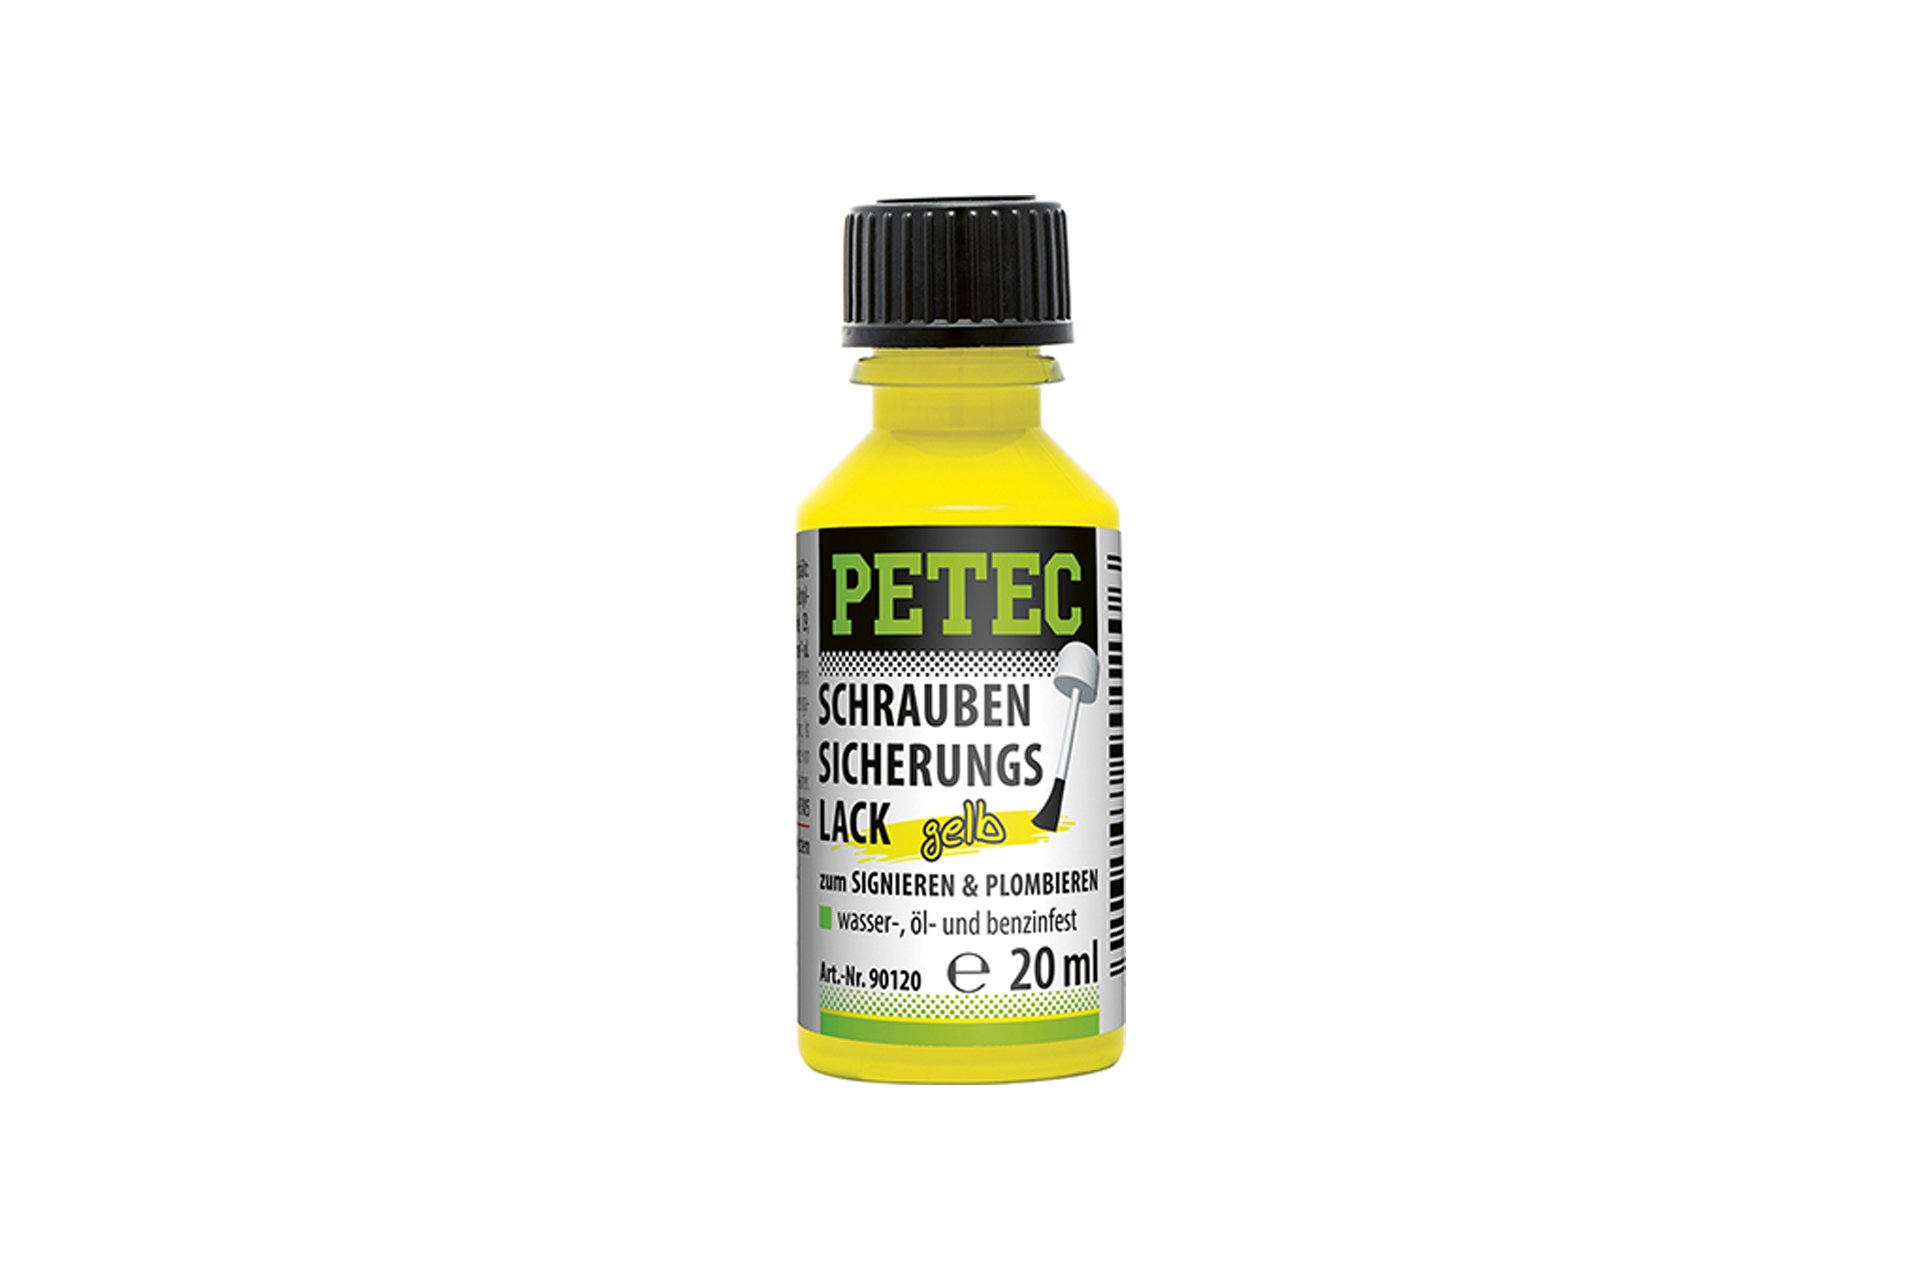 PETEC Schraubensicherungslack, gelb, 20 ml